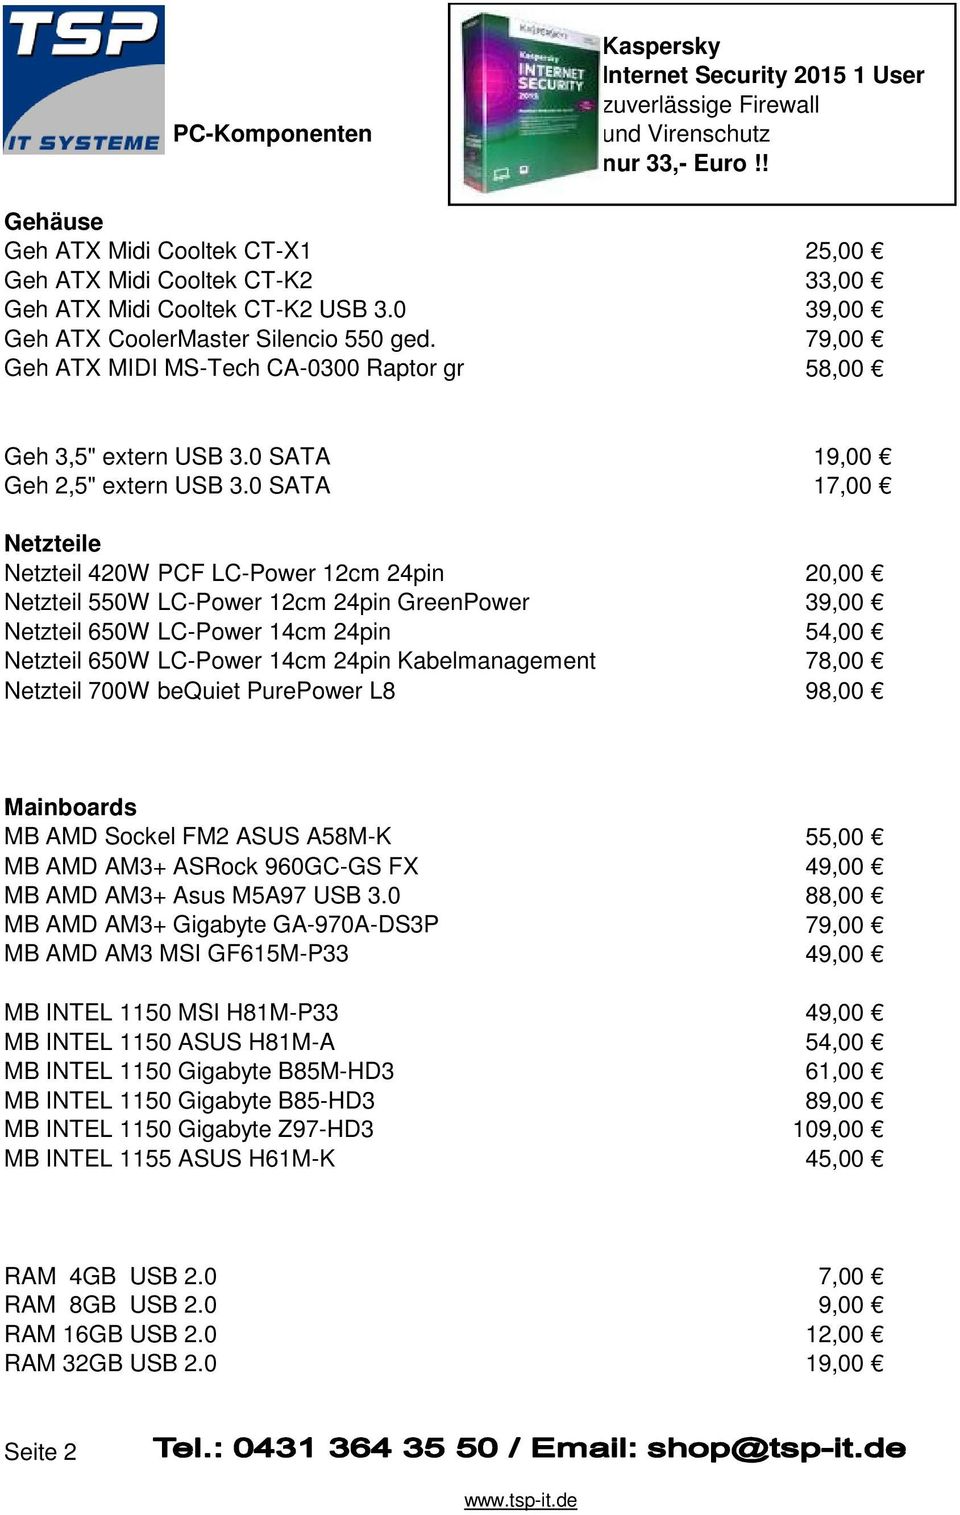 79,00 Geh ATX MIDI MS-Tech CA-0300 Raptor gr 58,00 Geh 3,5" extern USB 3.0 SATA 19,00 Geh 2,5" extern USB 3.